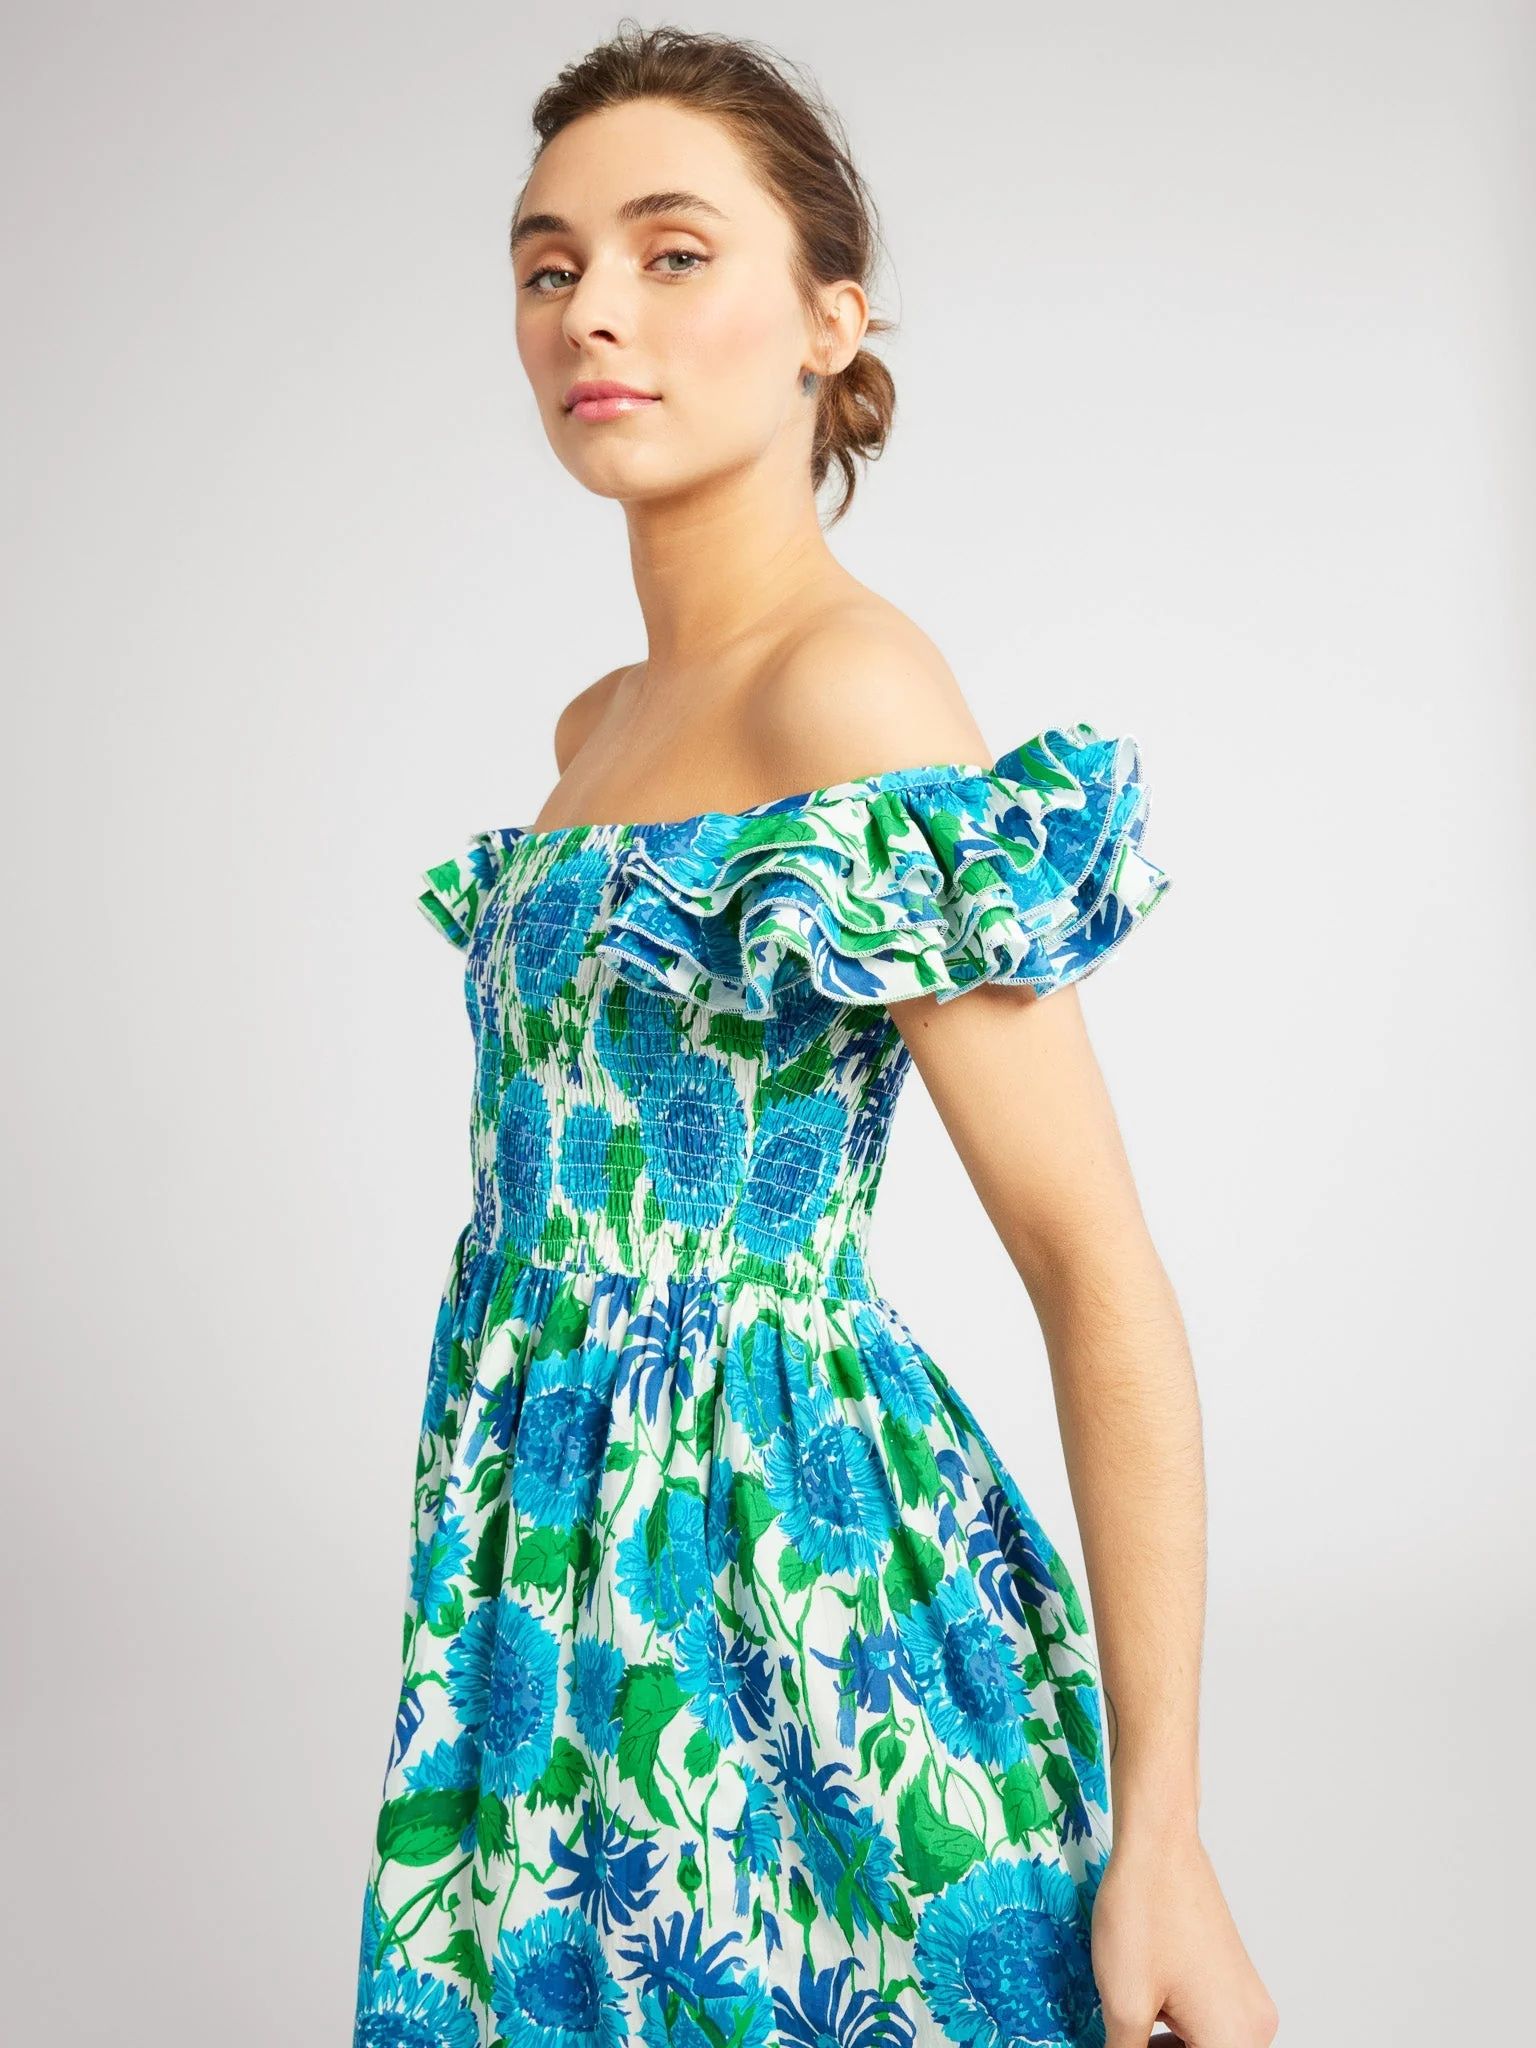 Shop Mille - Olympia Dress in Cornflower | Mille